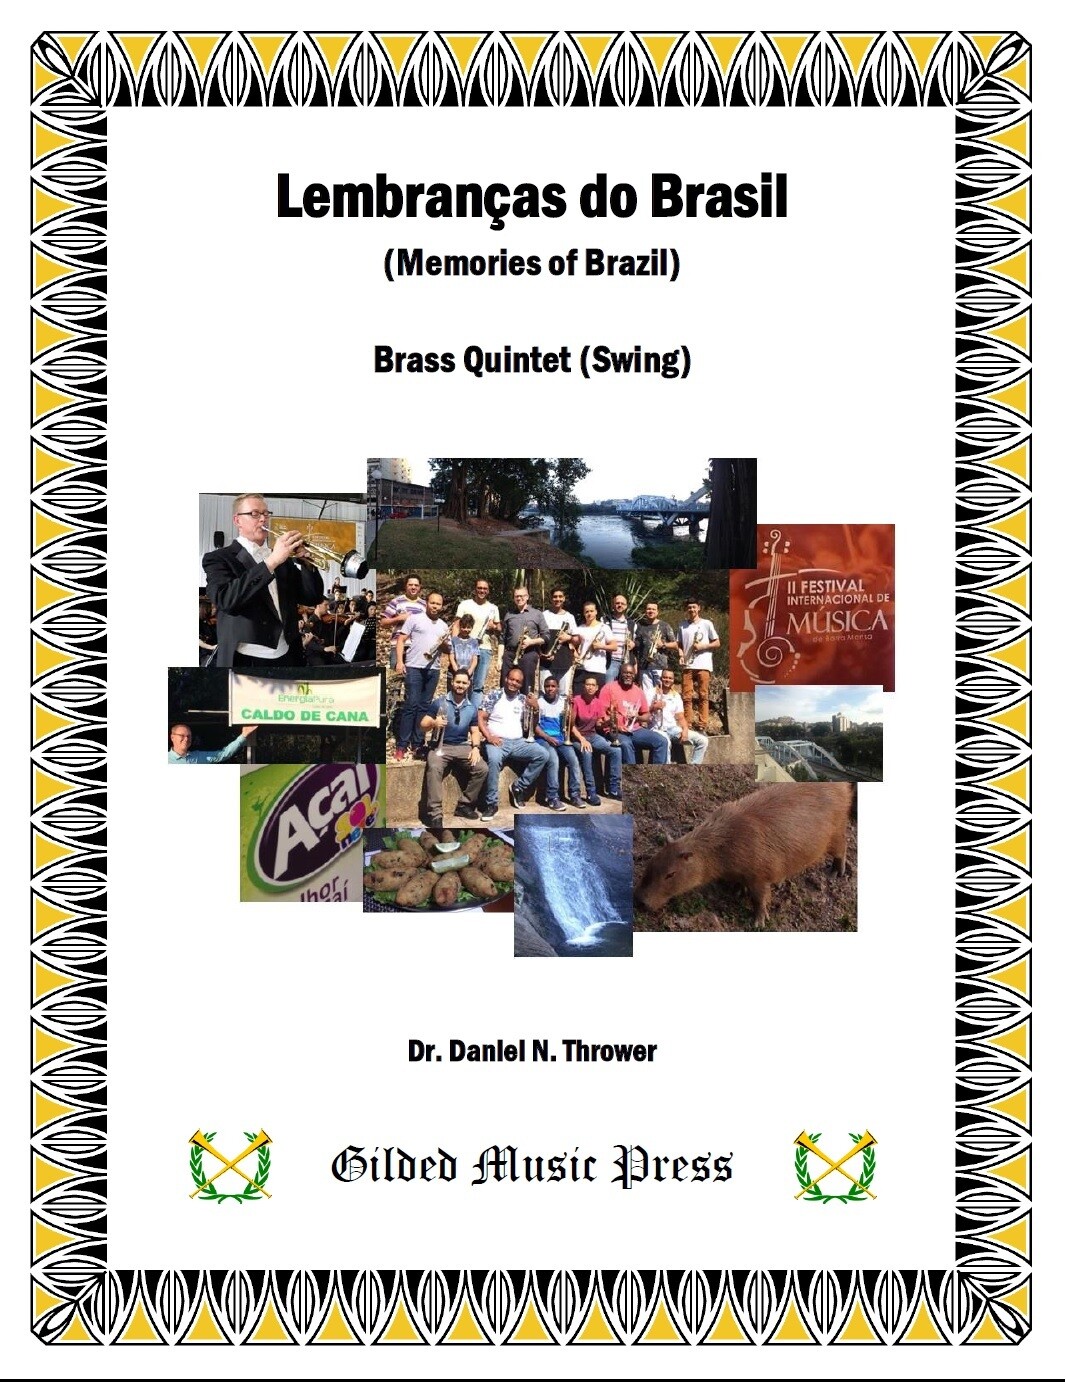 GMP 3017: Lembranças do Brasil (Brass Quintet), Dr. Daniel Thrower